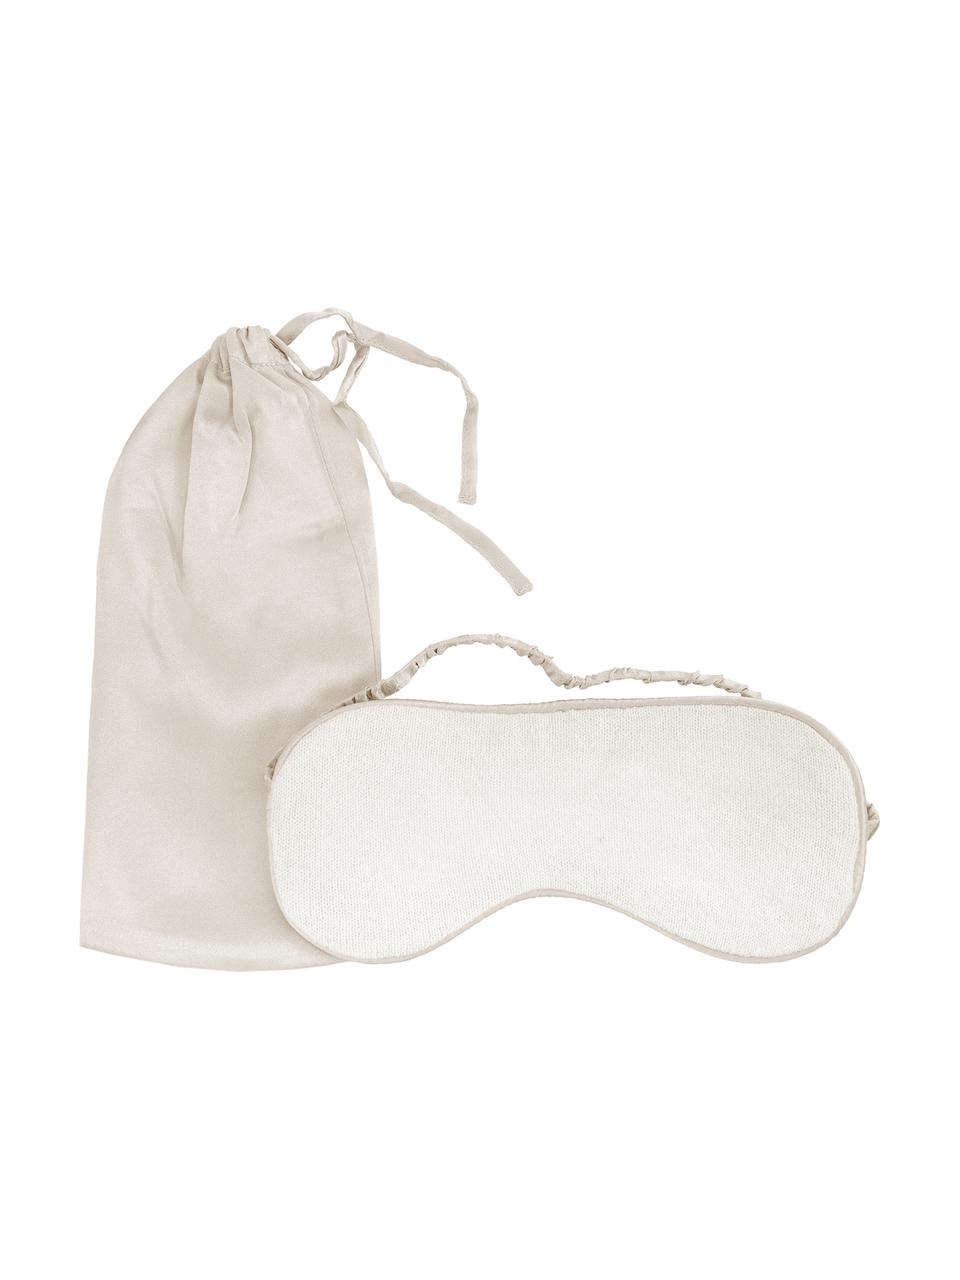 Hedvábná spací maska Silke, Slonová kost, béžová, Š 21 cm